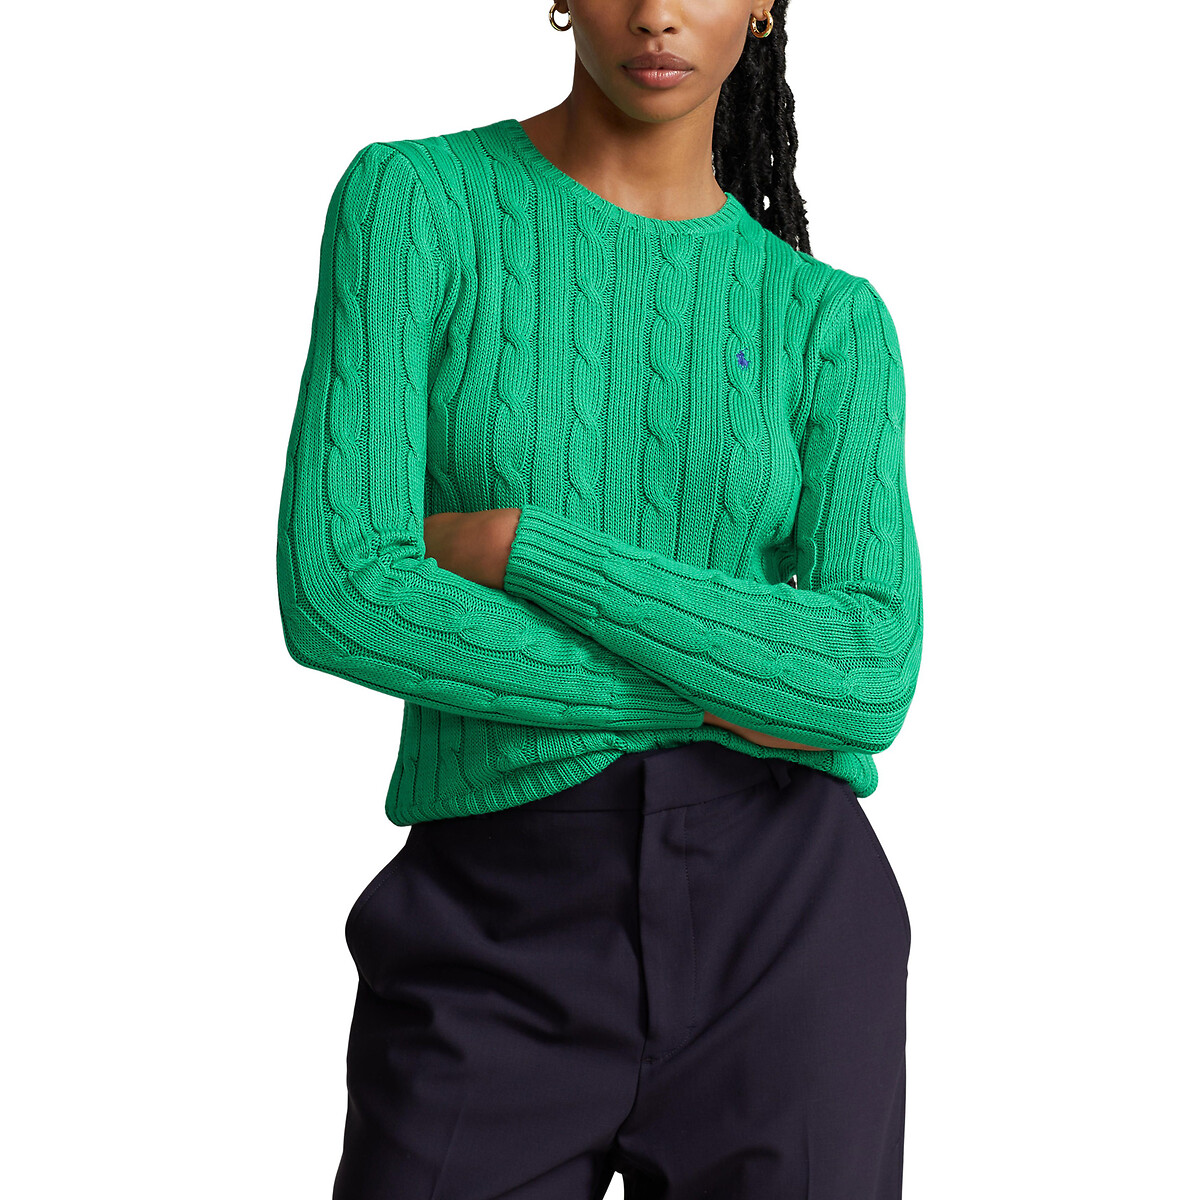 Пуловер Julianna из витого трикотажа с круглым вырезом M зеленый пуловер с витым узором m синий